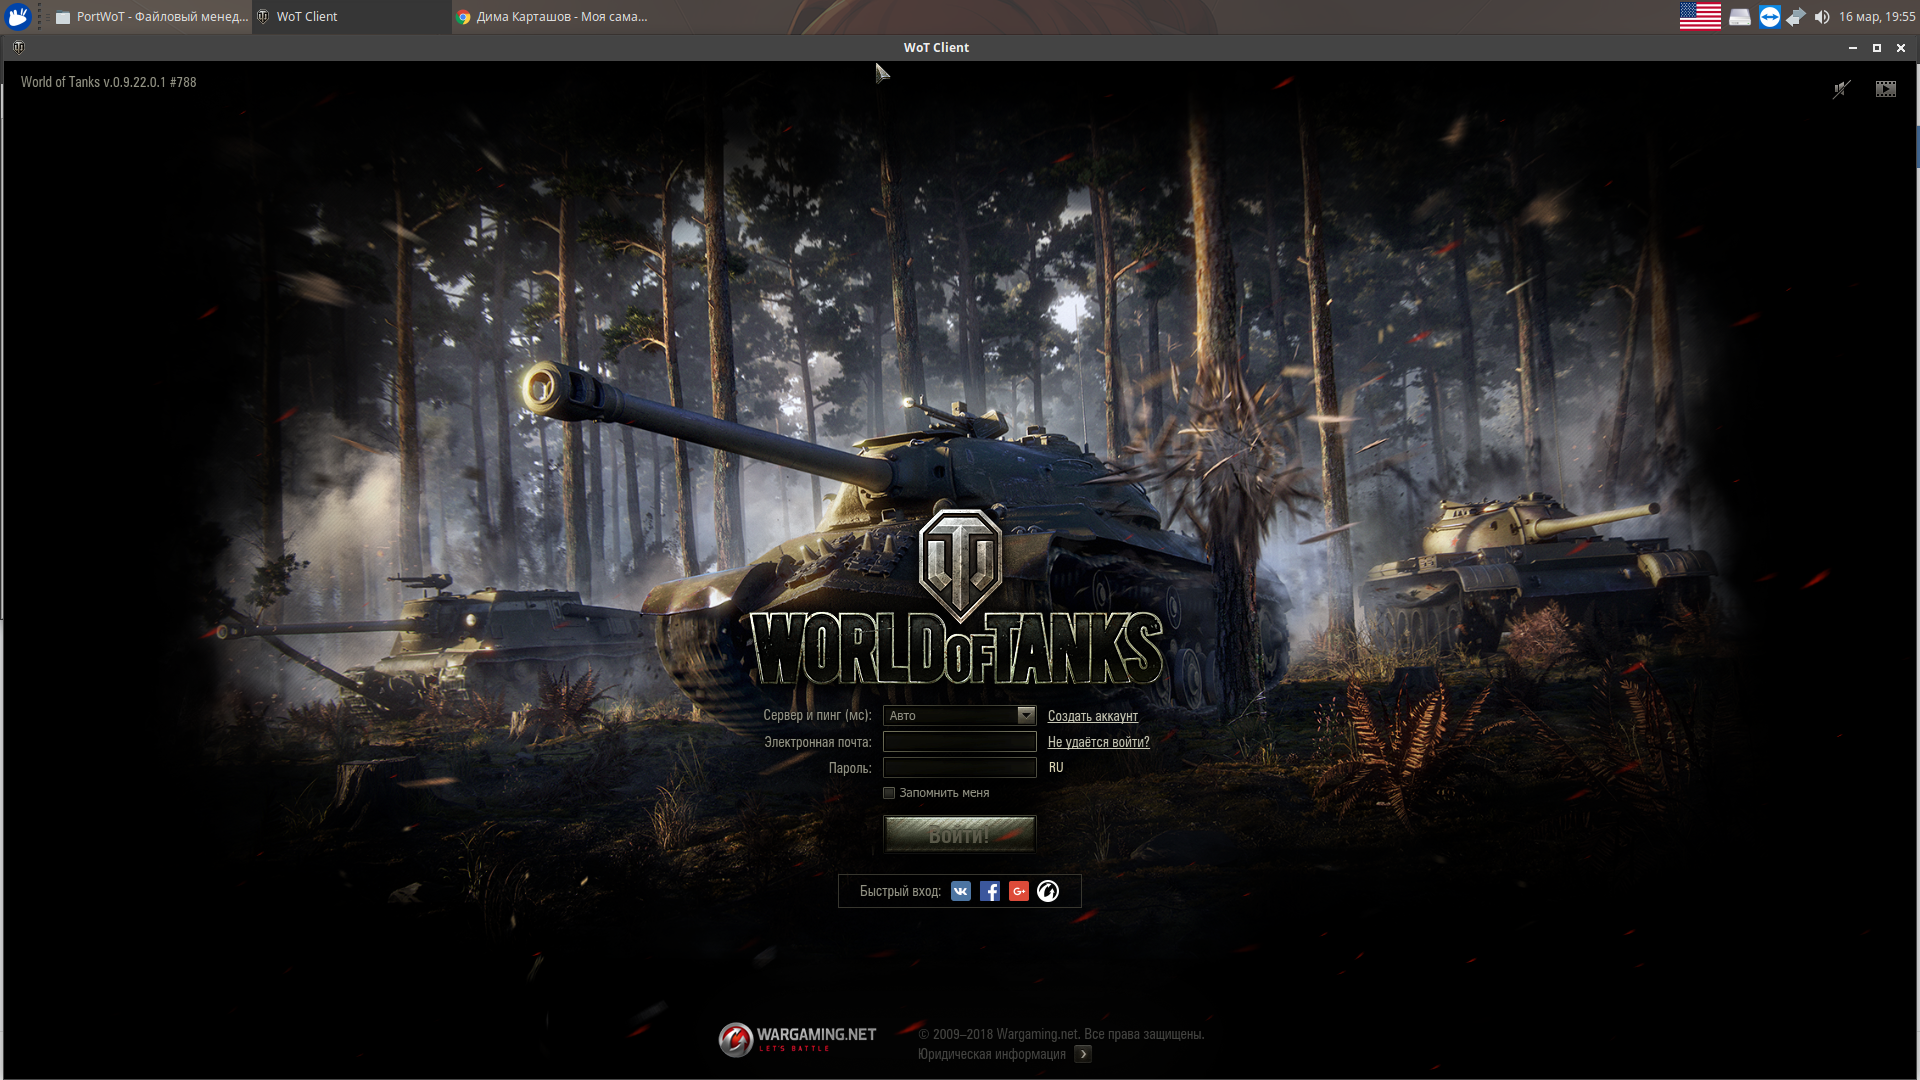 Установки world of tanks. Загрузка WOT. Экран загрузки вот. Загрузочный экран танки. World of Tanks экран загрузки.